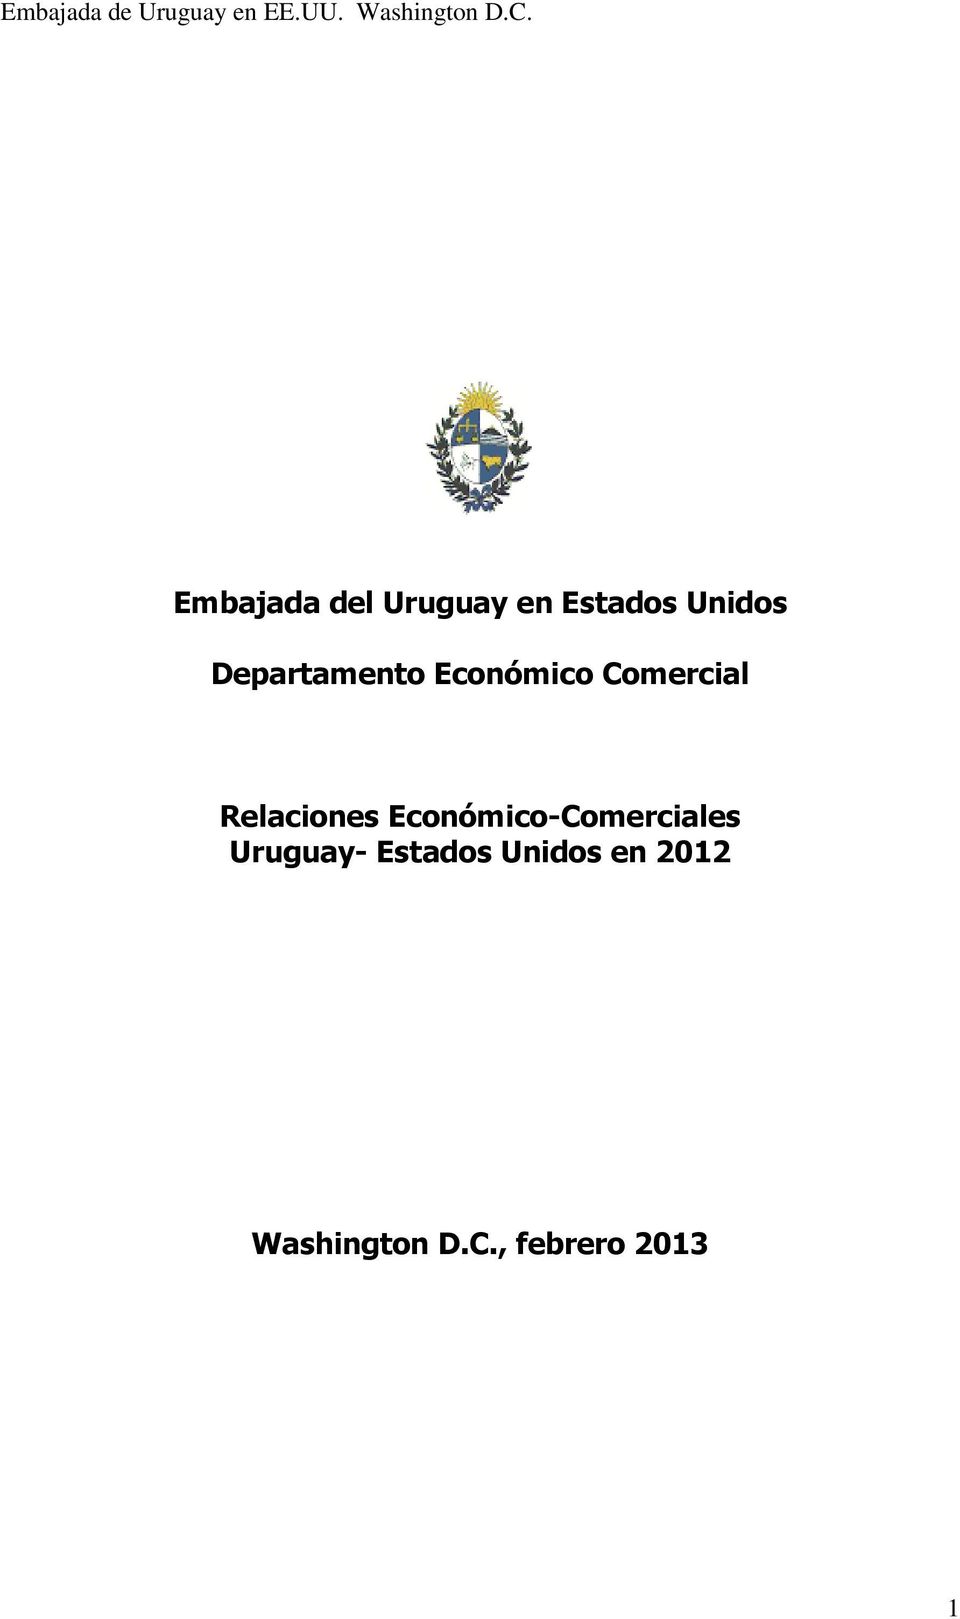 Relaciones Económico-Comerciales Uruguay-